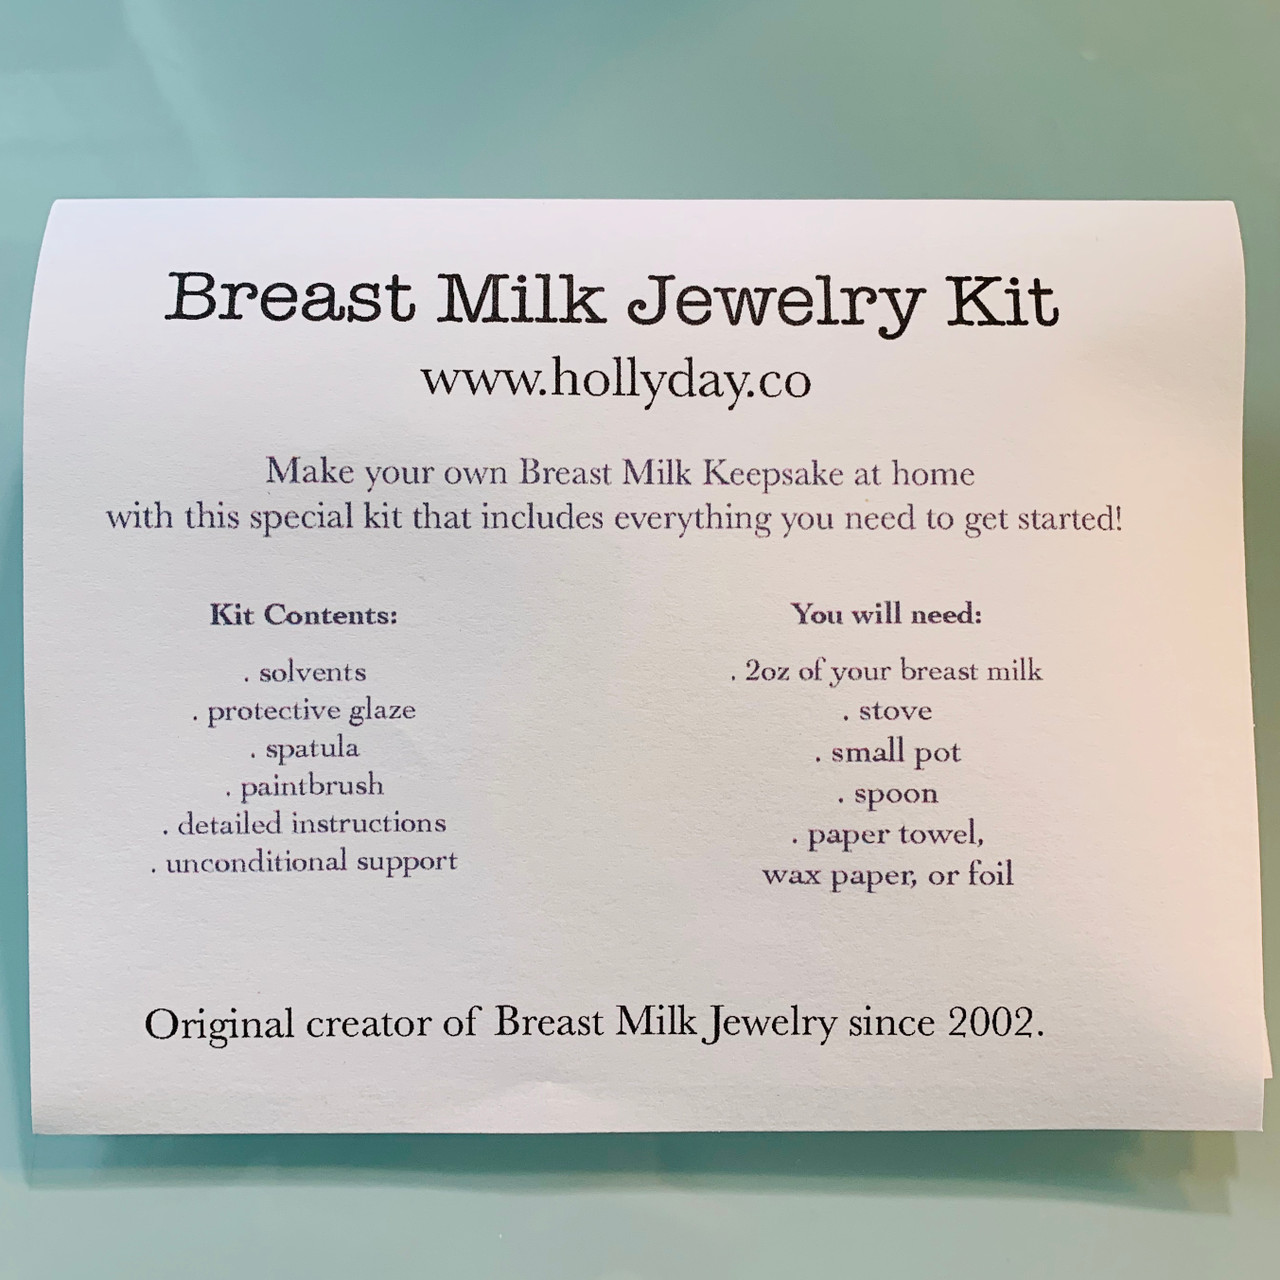 Breast milk jewelry kit 